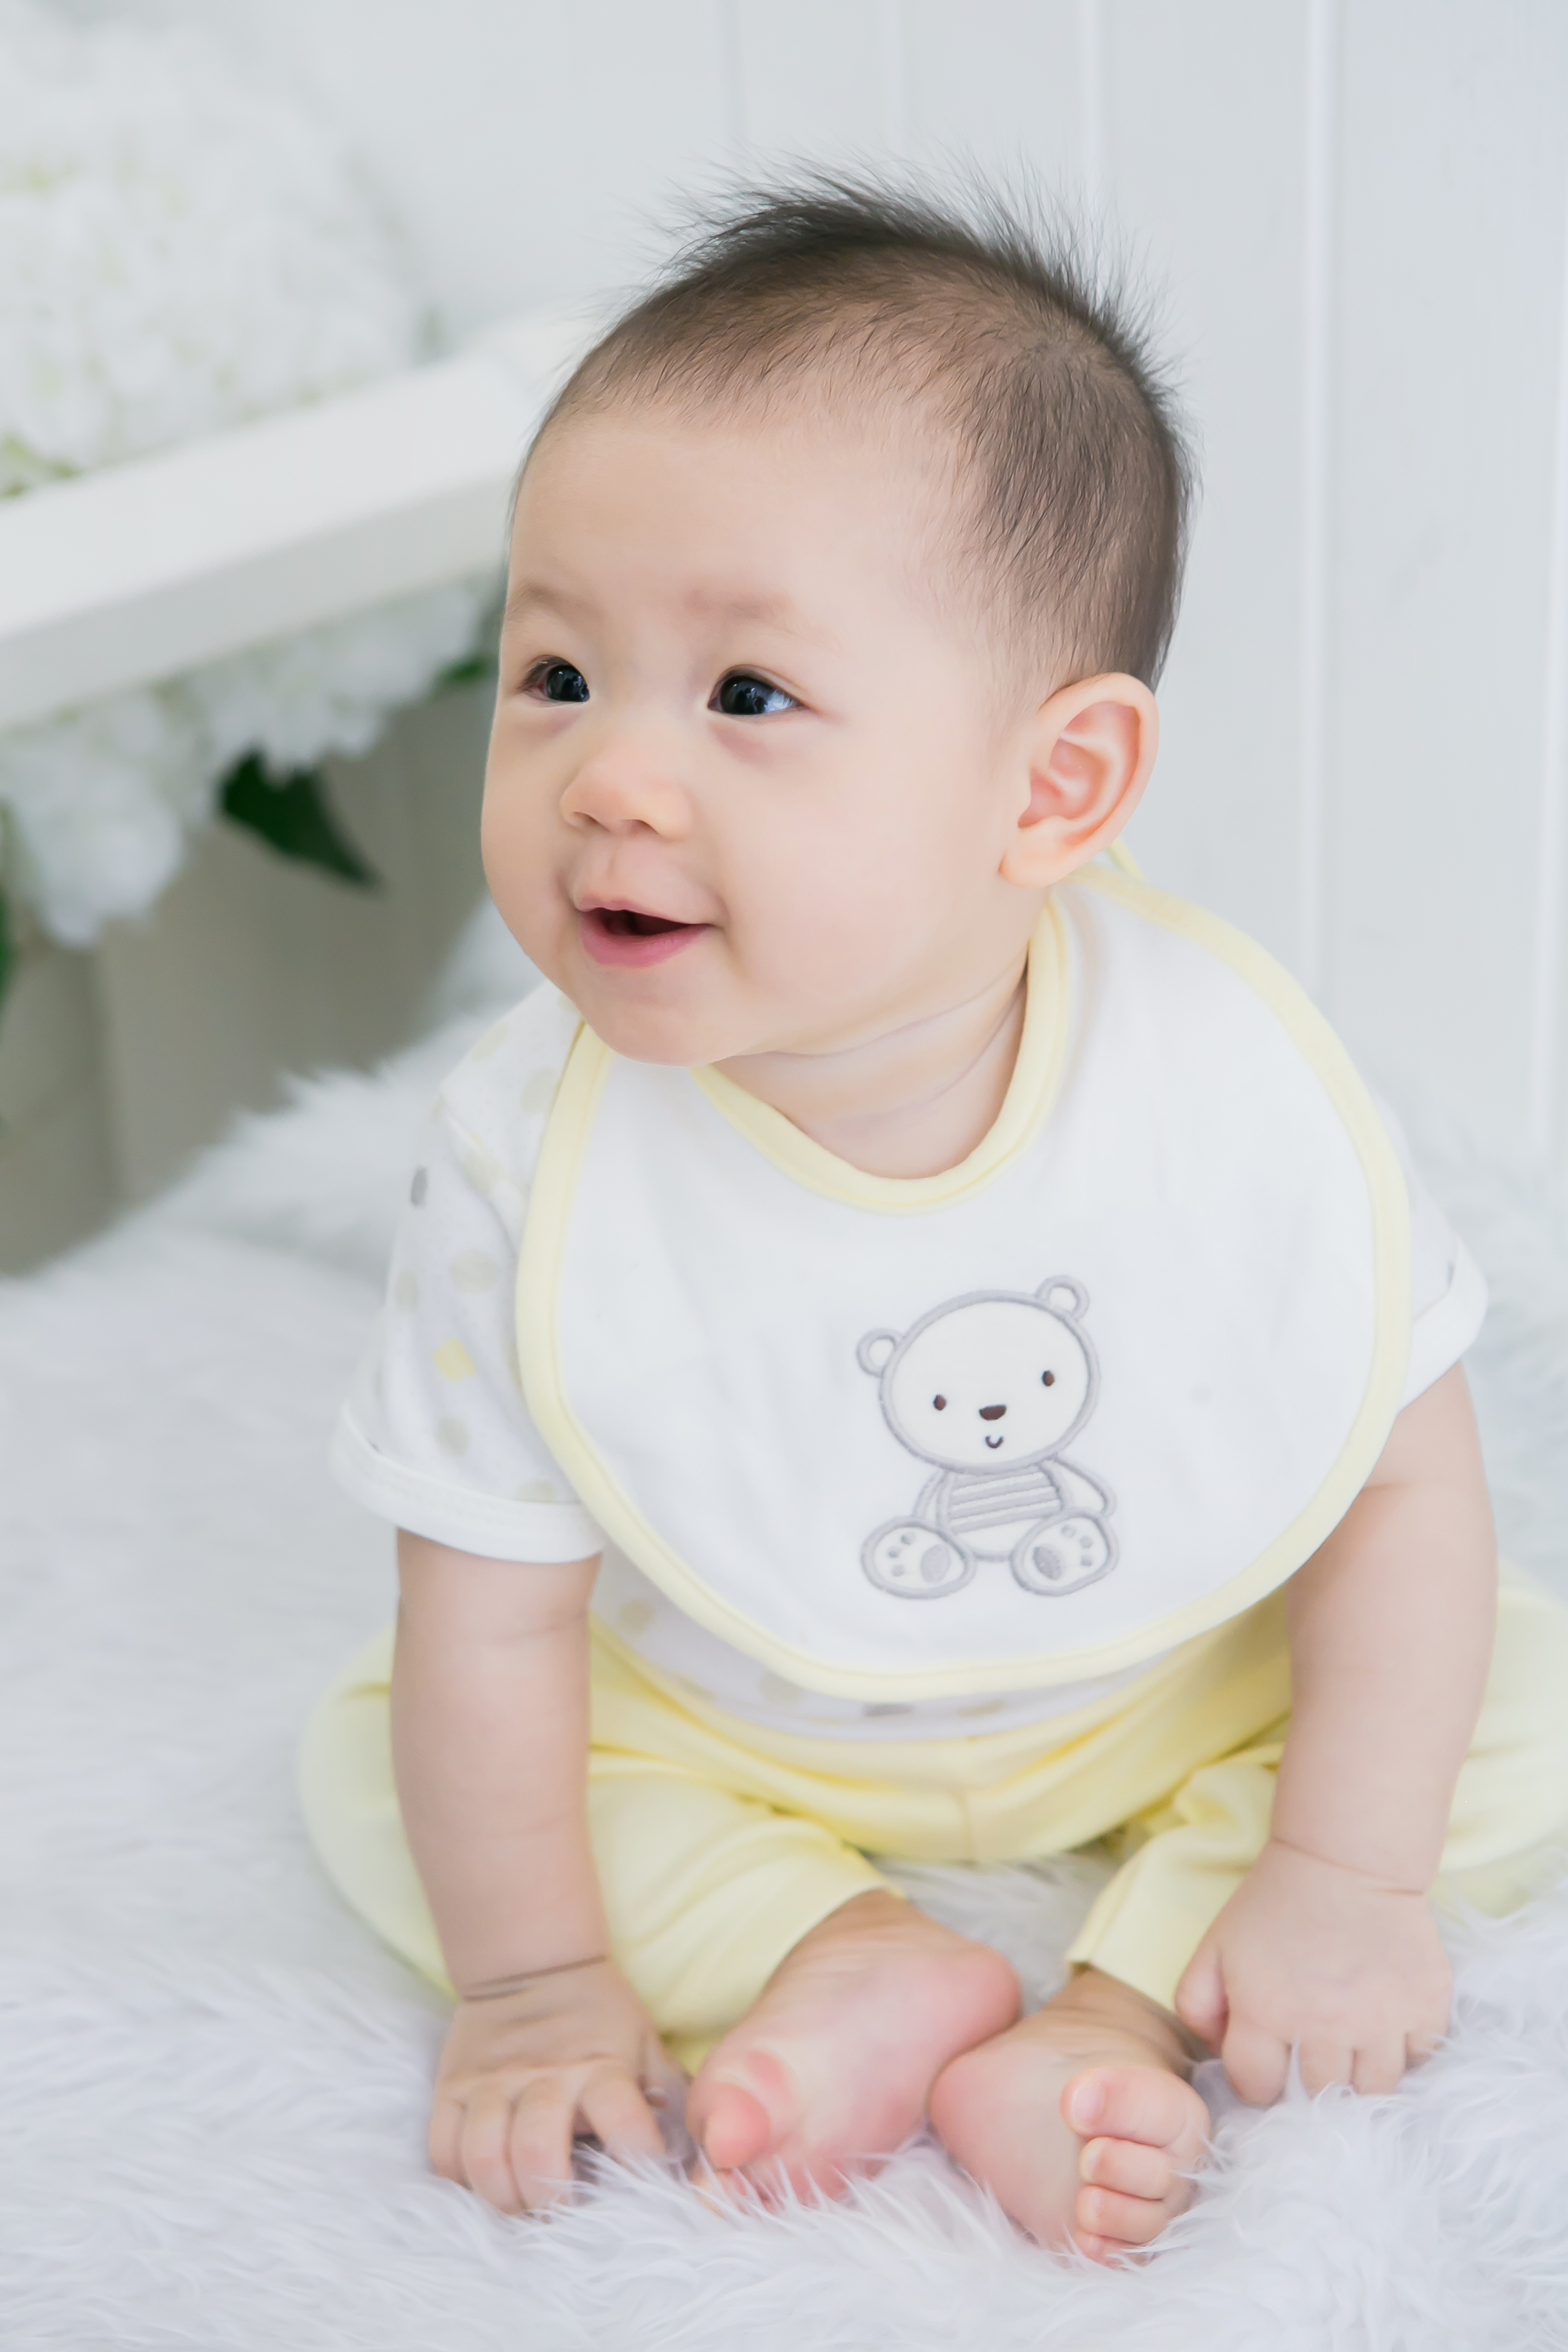 Baby Bright Newborn Baby Boy Clothes Essentials Shower Gift Set - 14 Pieces, 0-3 Months - image 3 of 6